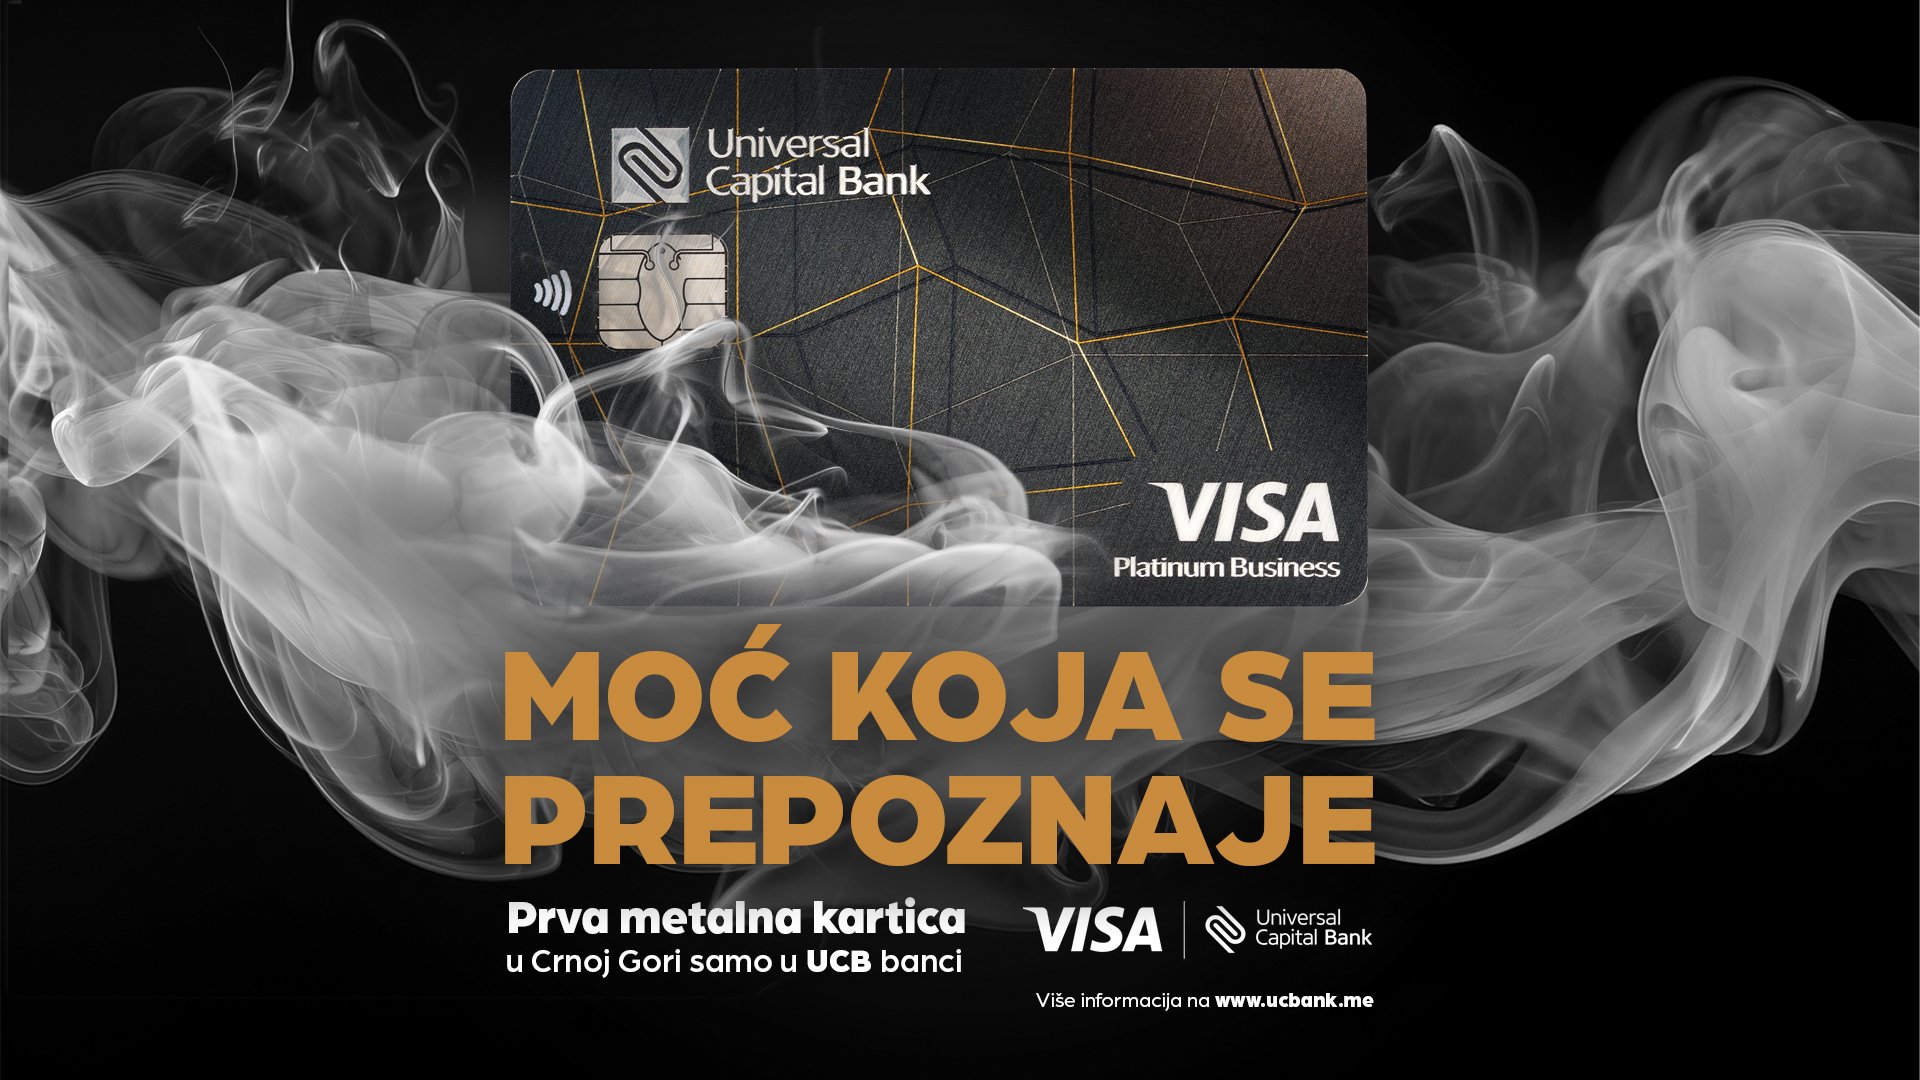 Universal Capital Banka lansirala prvu metalnu karticu u Crnoj Gori - moć koja se prepoznaje!